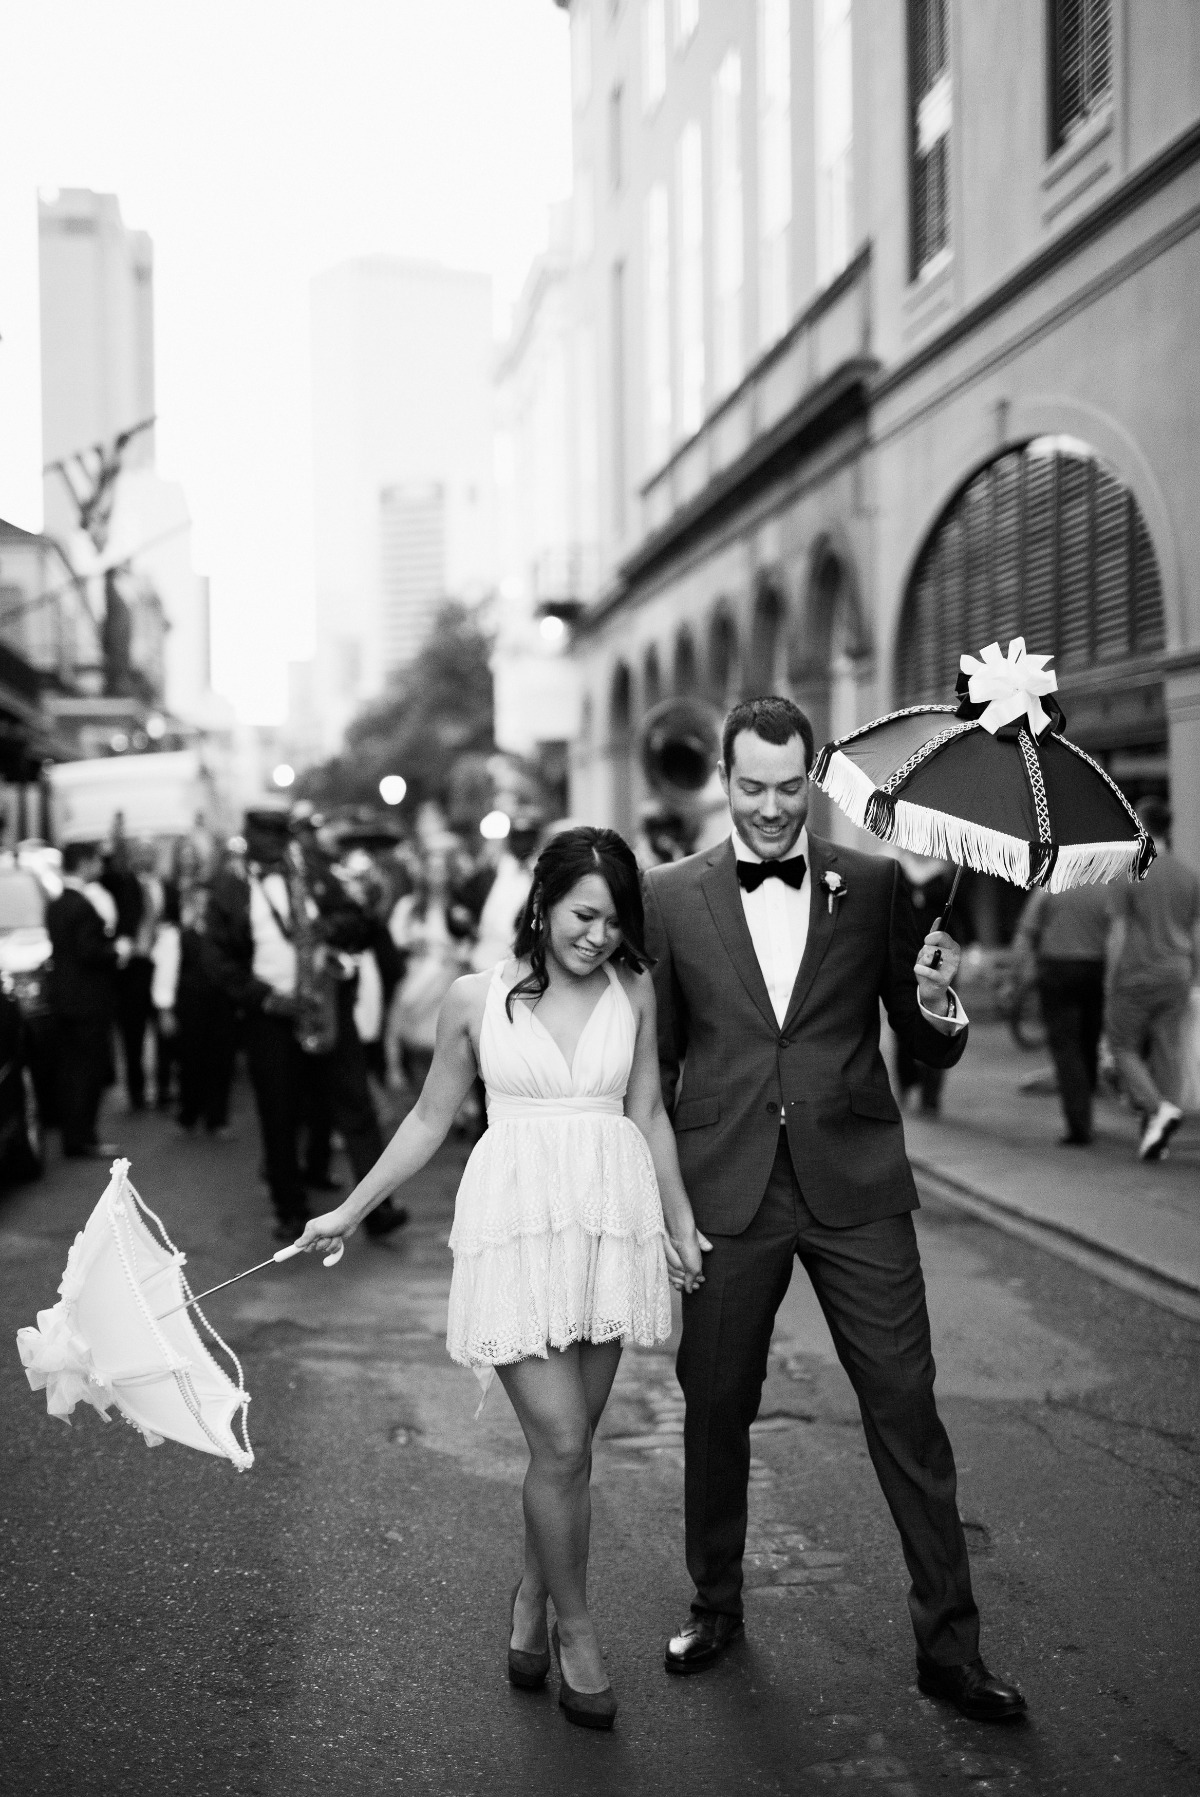 10 Unique Ways to Have an Unforgettable Wedding that Wonât Pad Your Budget